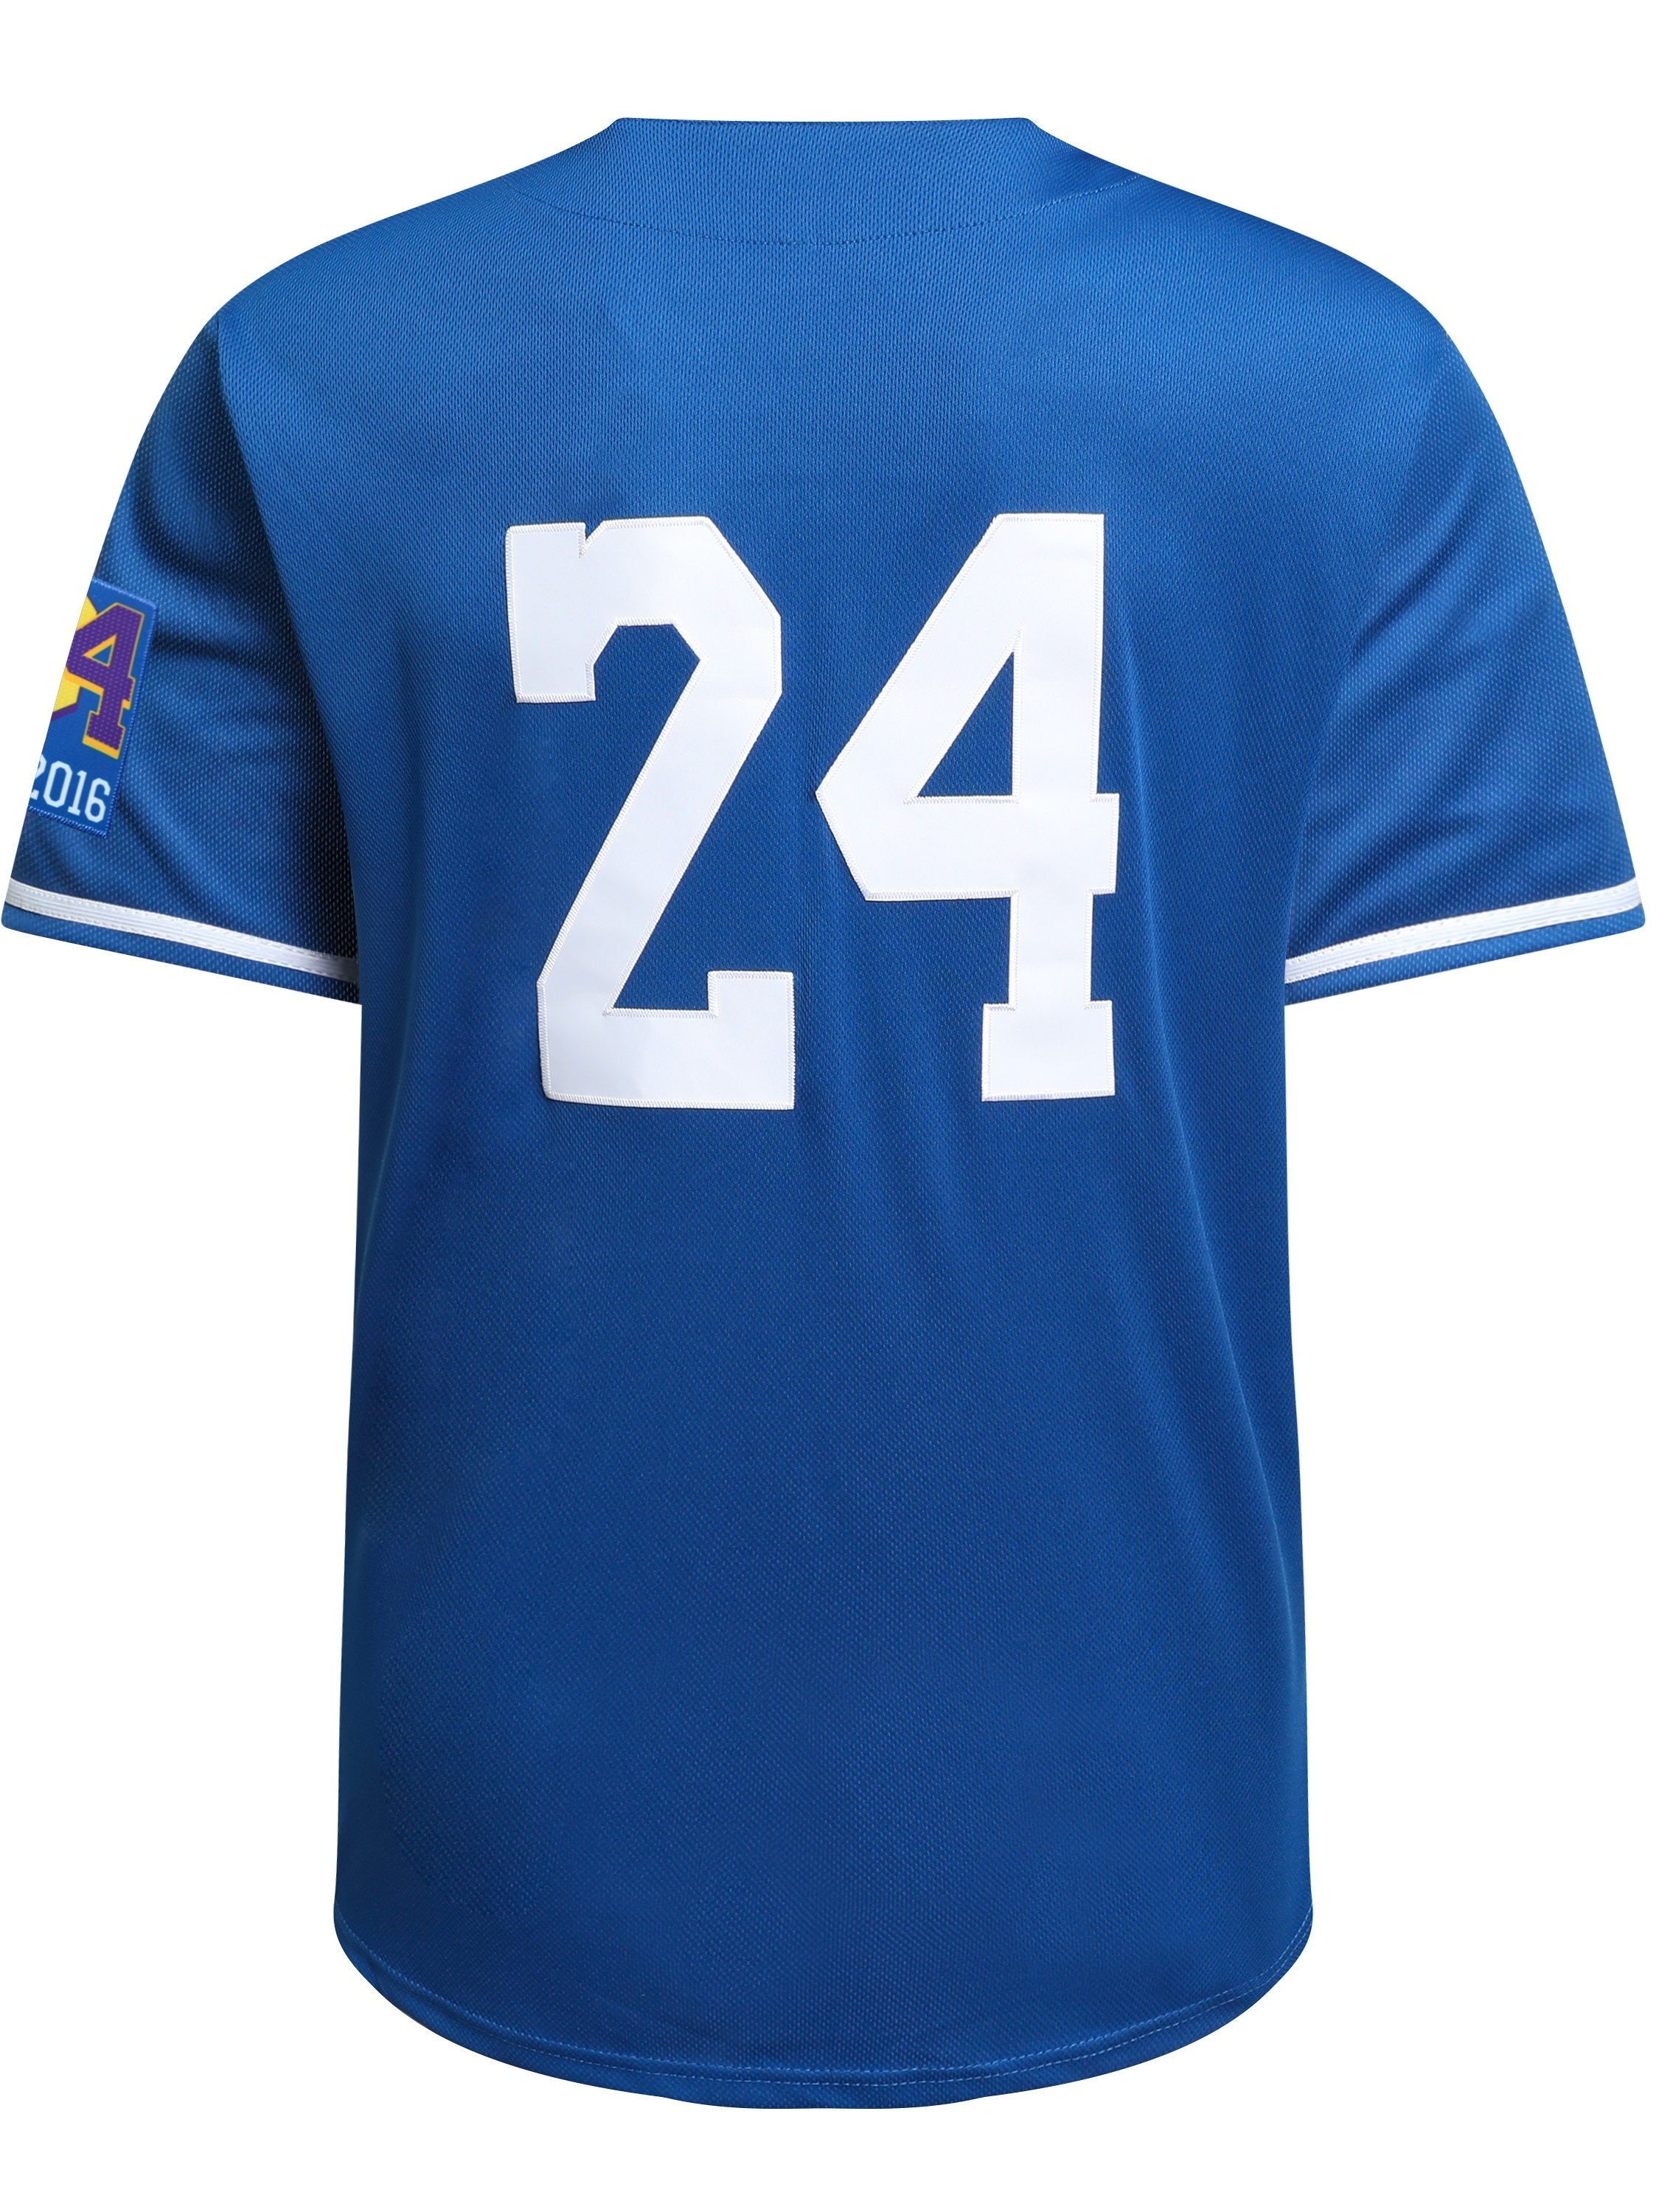 Personalized Men's Baseball Jeresy #8#24 Mamba Jersey Shirts Stitched 